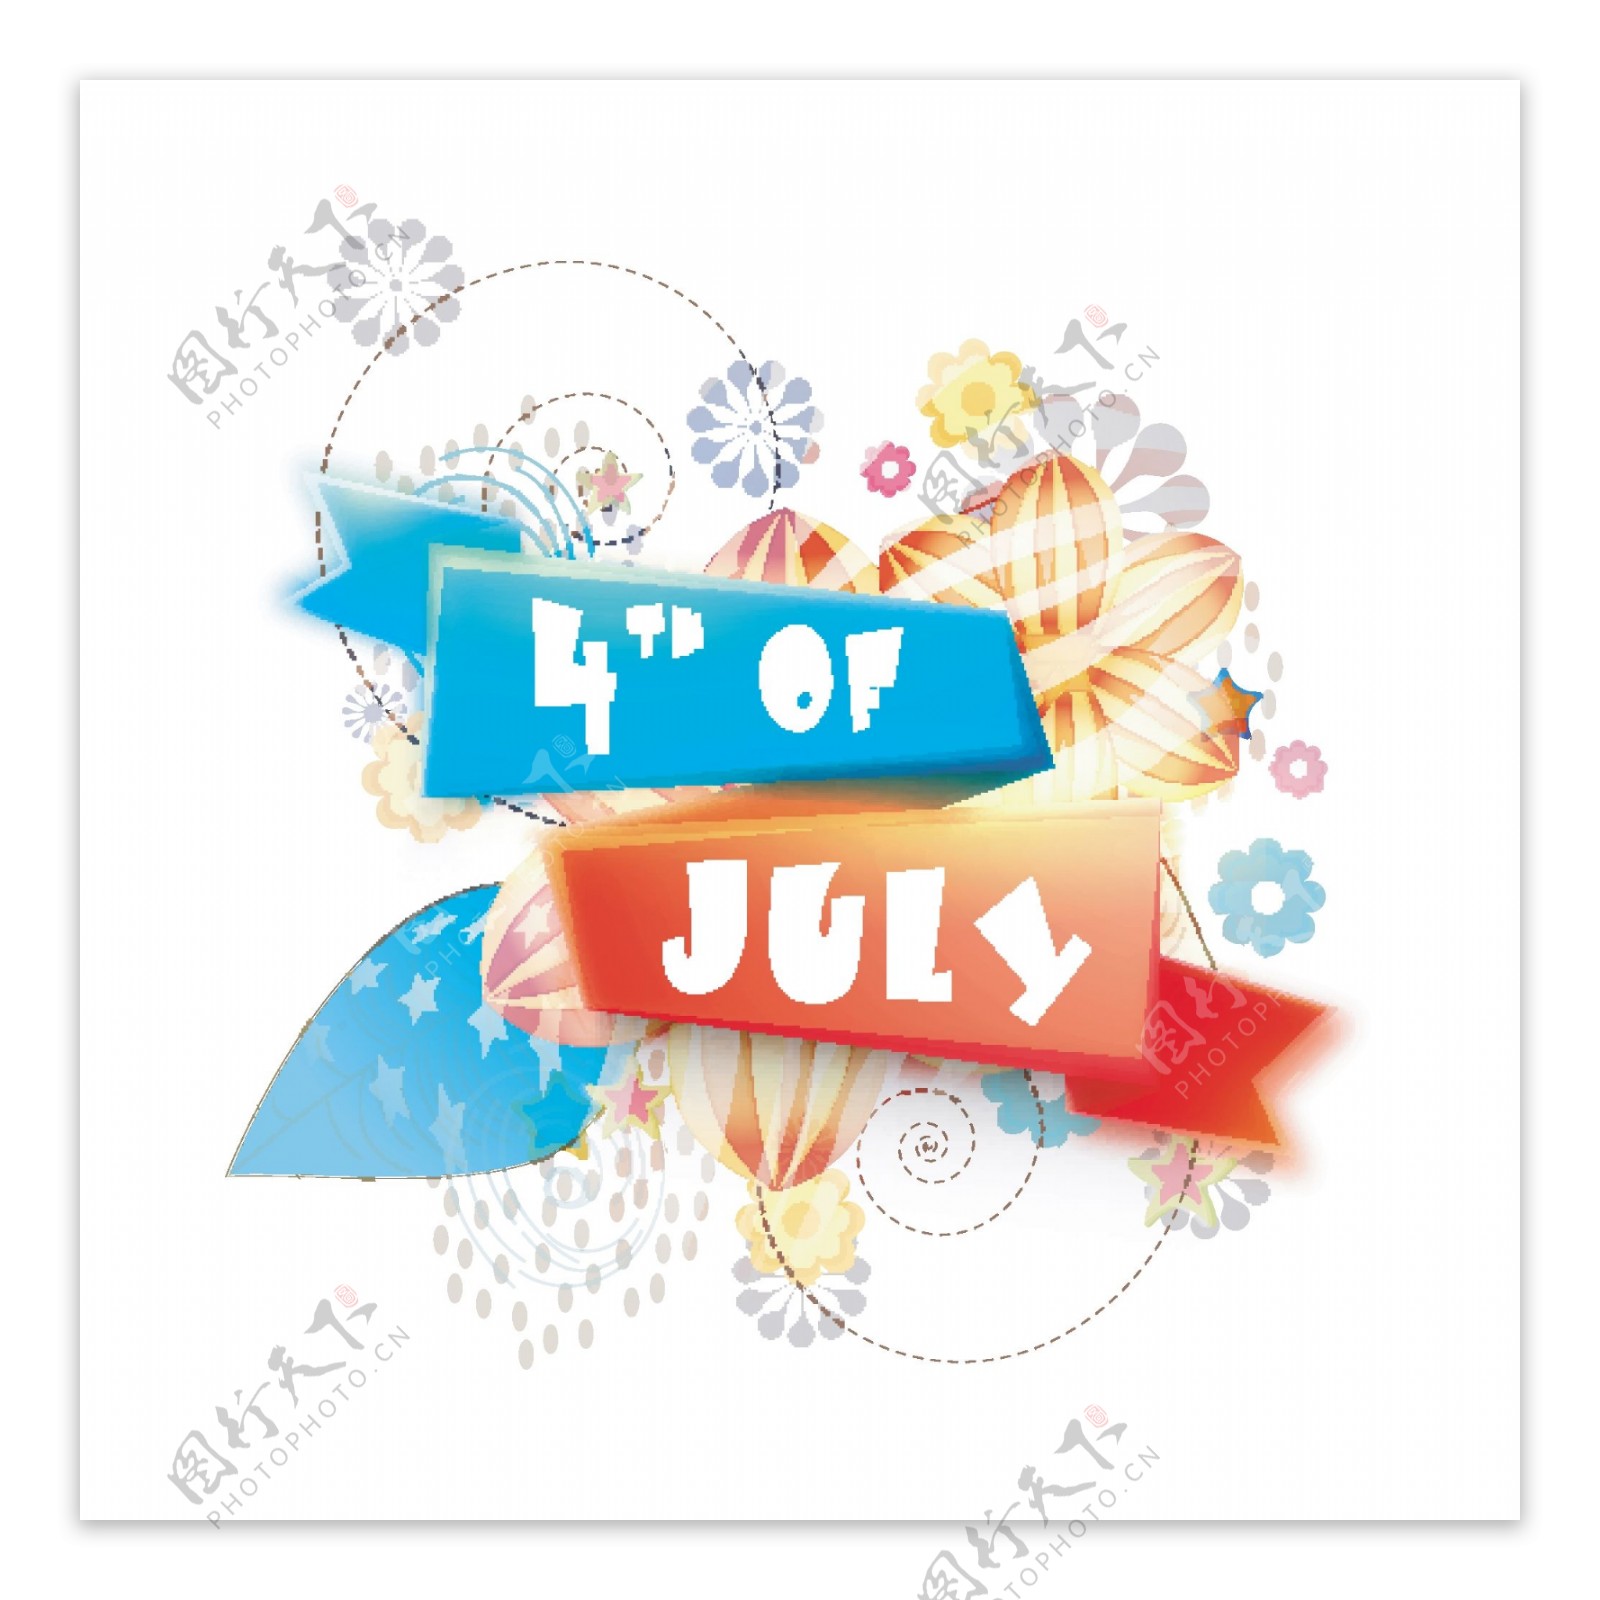 第四七月丝带图案设计抽象花卉元素背景为美国独立日庆祝活动